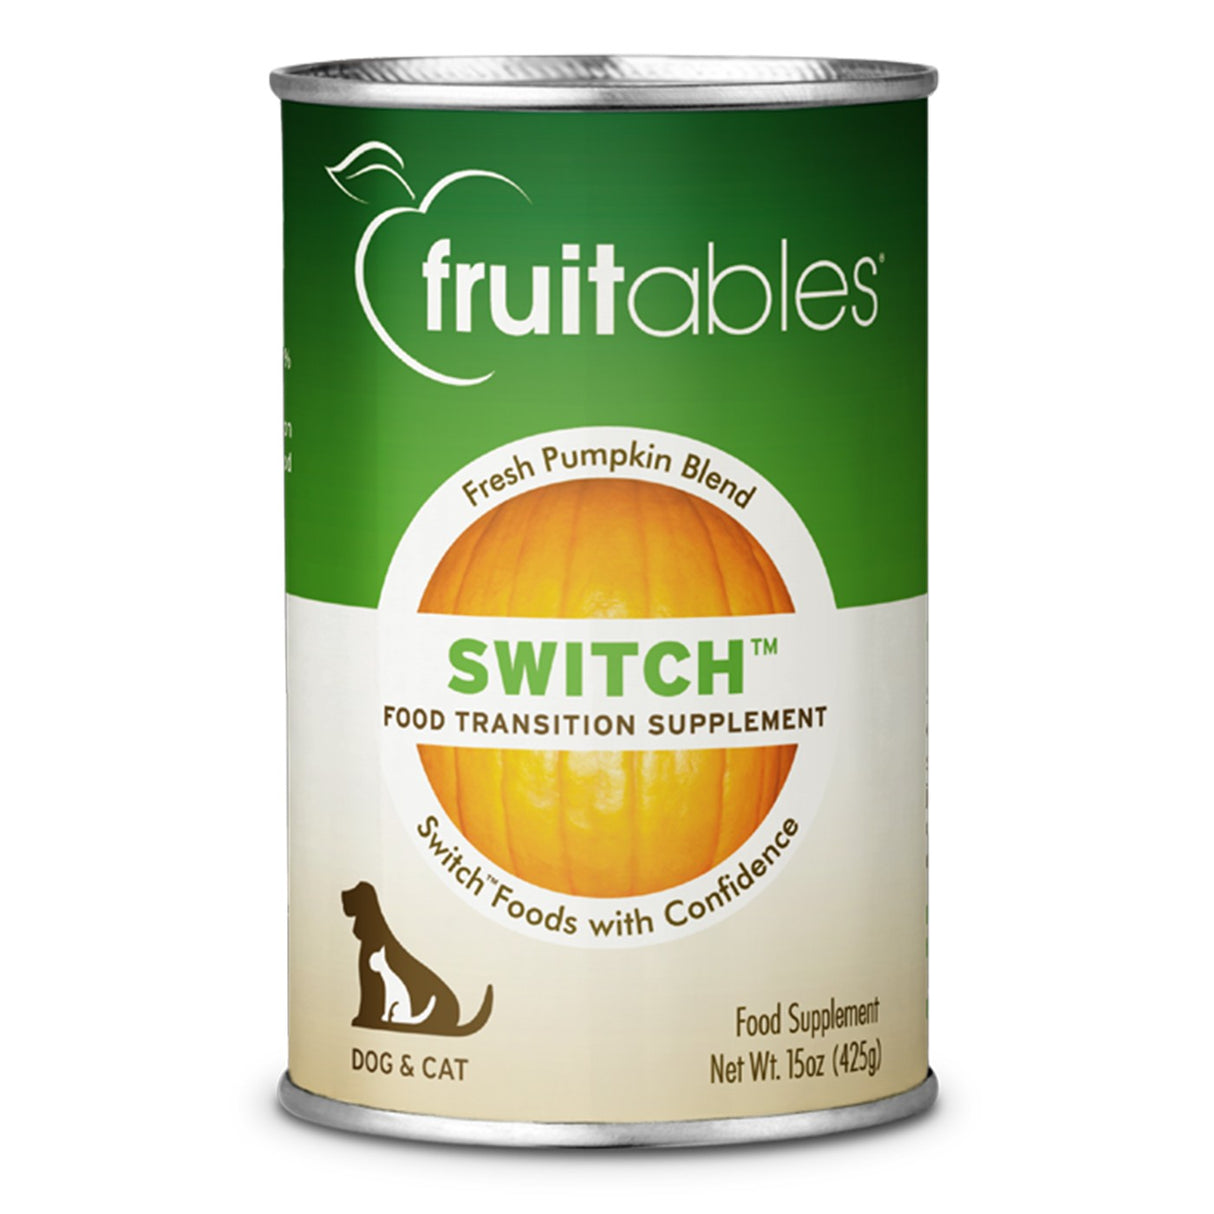 Fruitables Supplément de transition alimentaire Superblend Switch en conserve 15 oz.